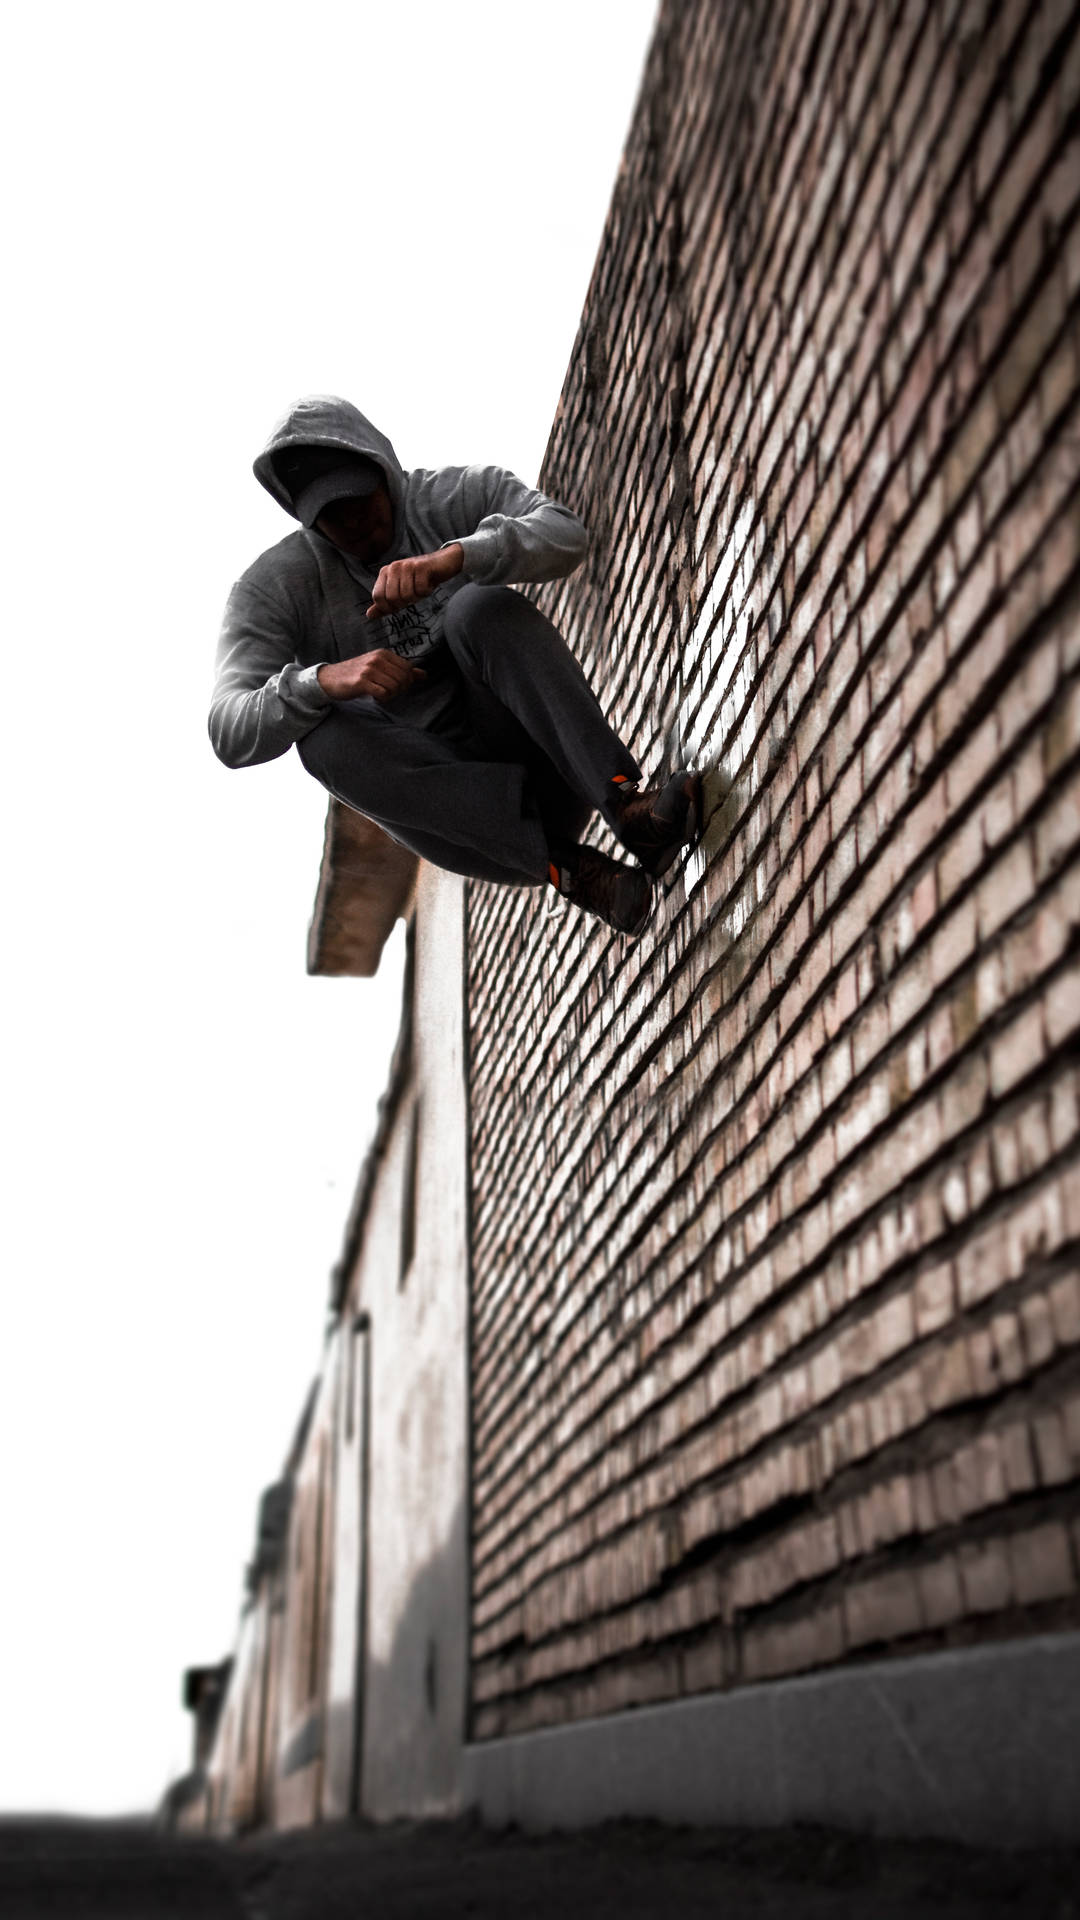 Parkour Stunt On Brick Wall